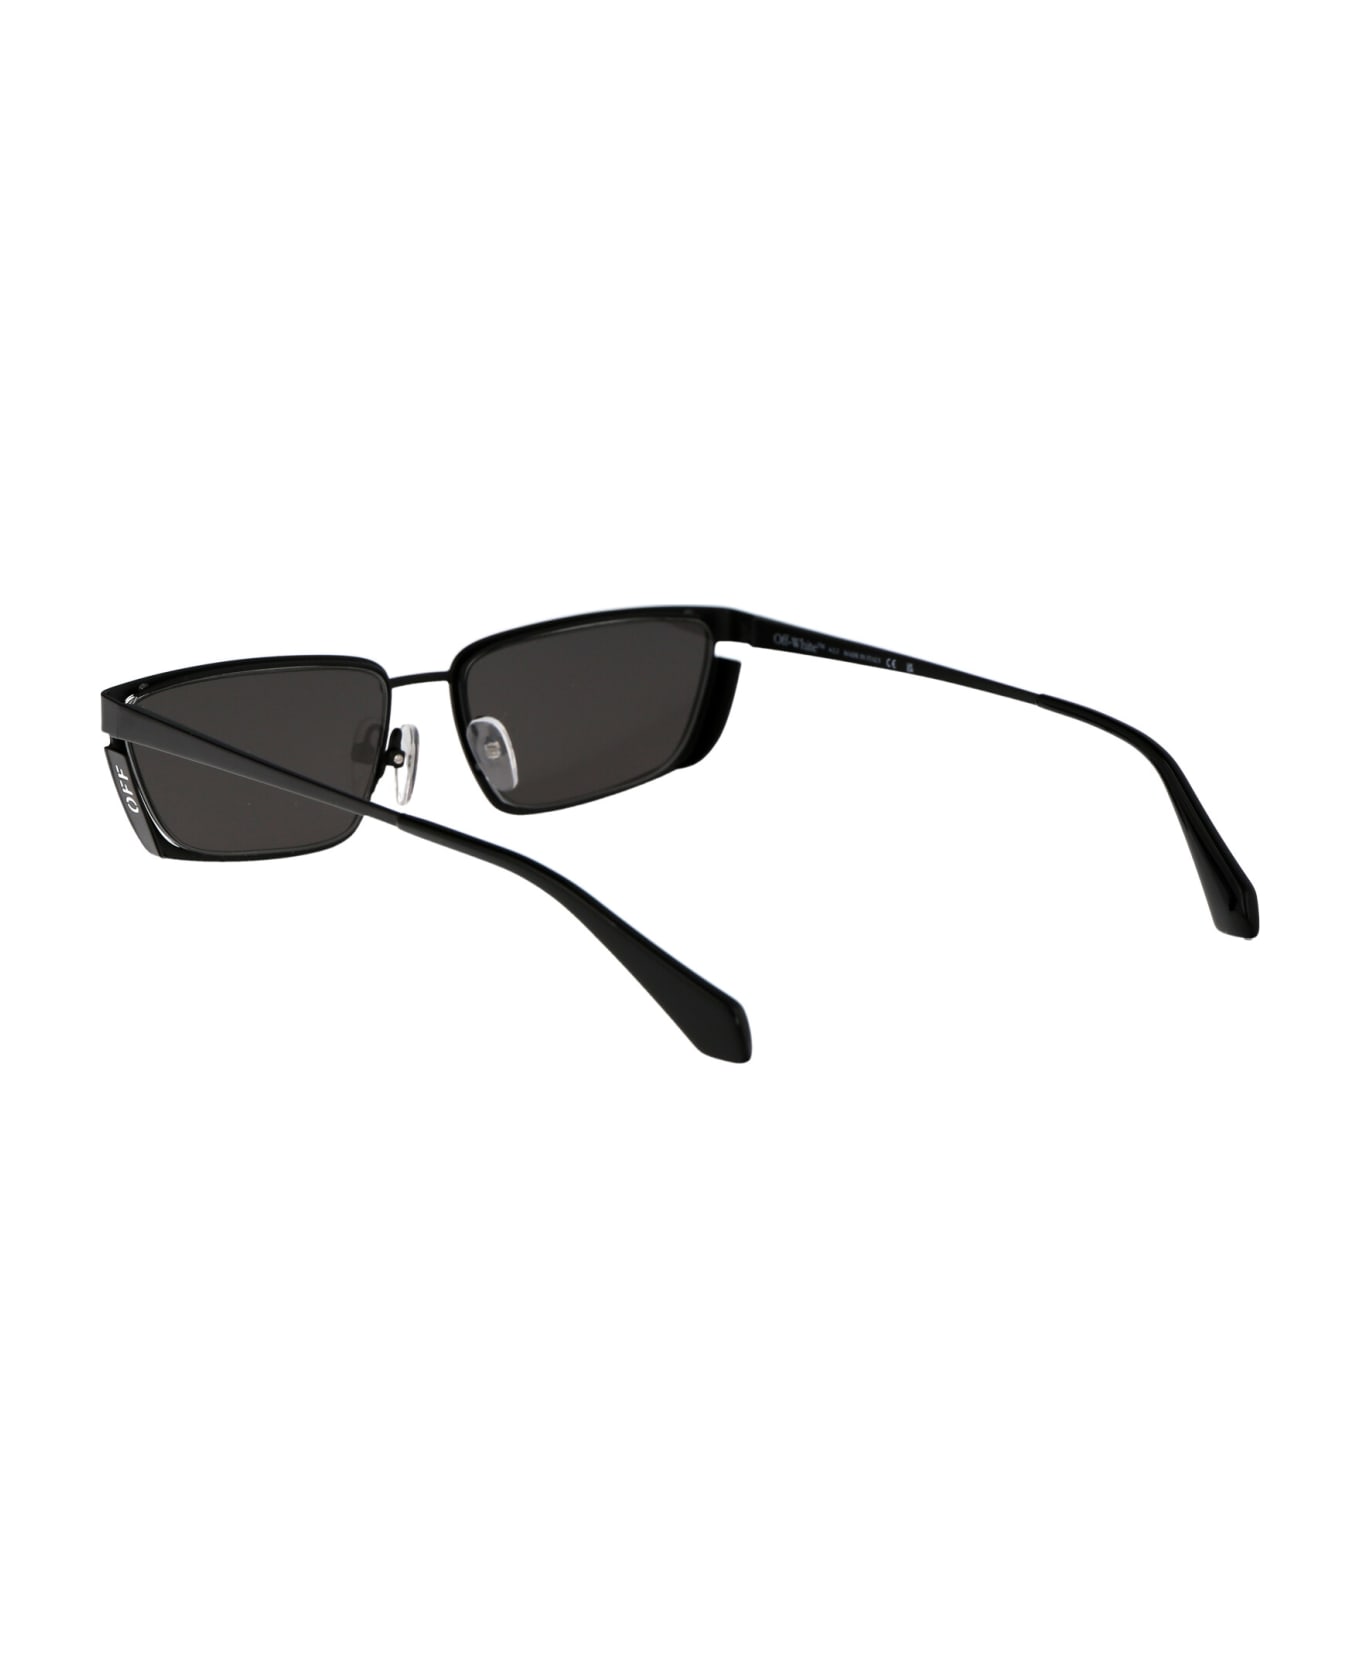 Off-White Richfield Sunglasses - 1007 BLACK